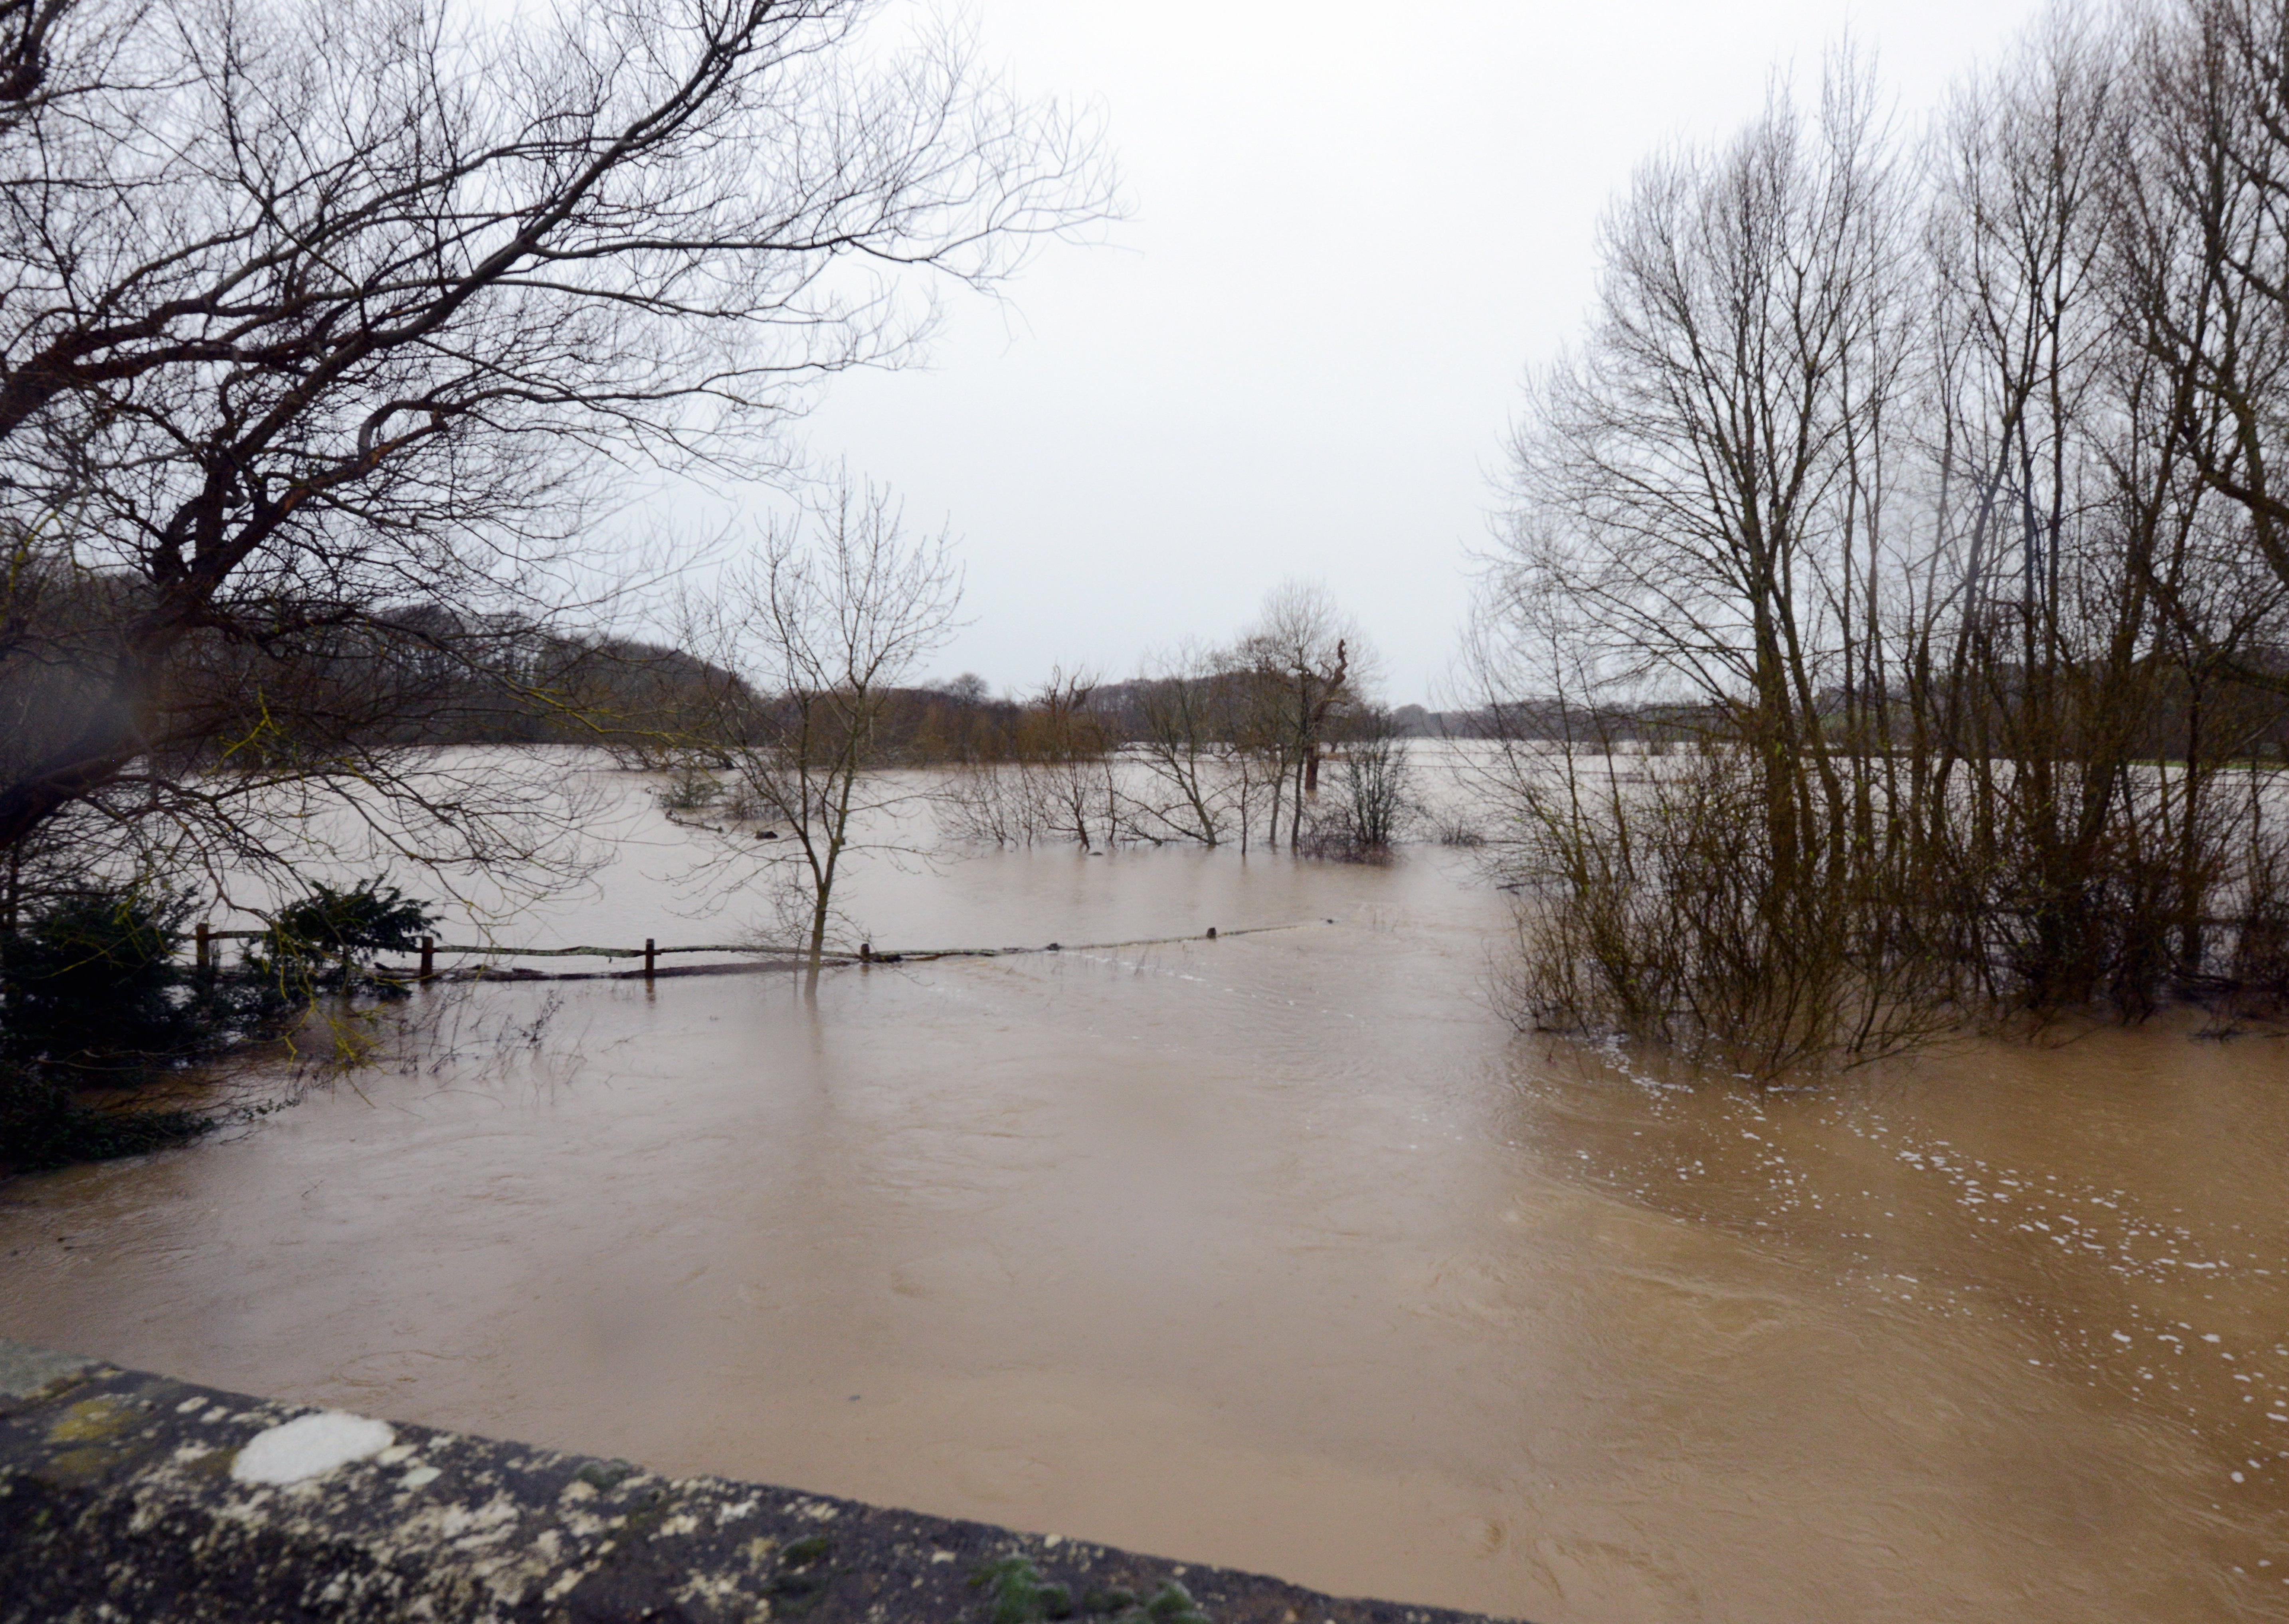 ks20062-10 Dennis Mid Pet Flood  phot kate
The river at Fittleworth burst its banks.ks20062-10 SUS-200216-184342008